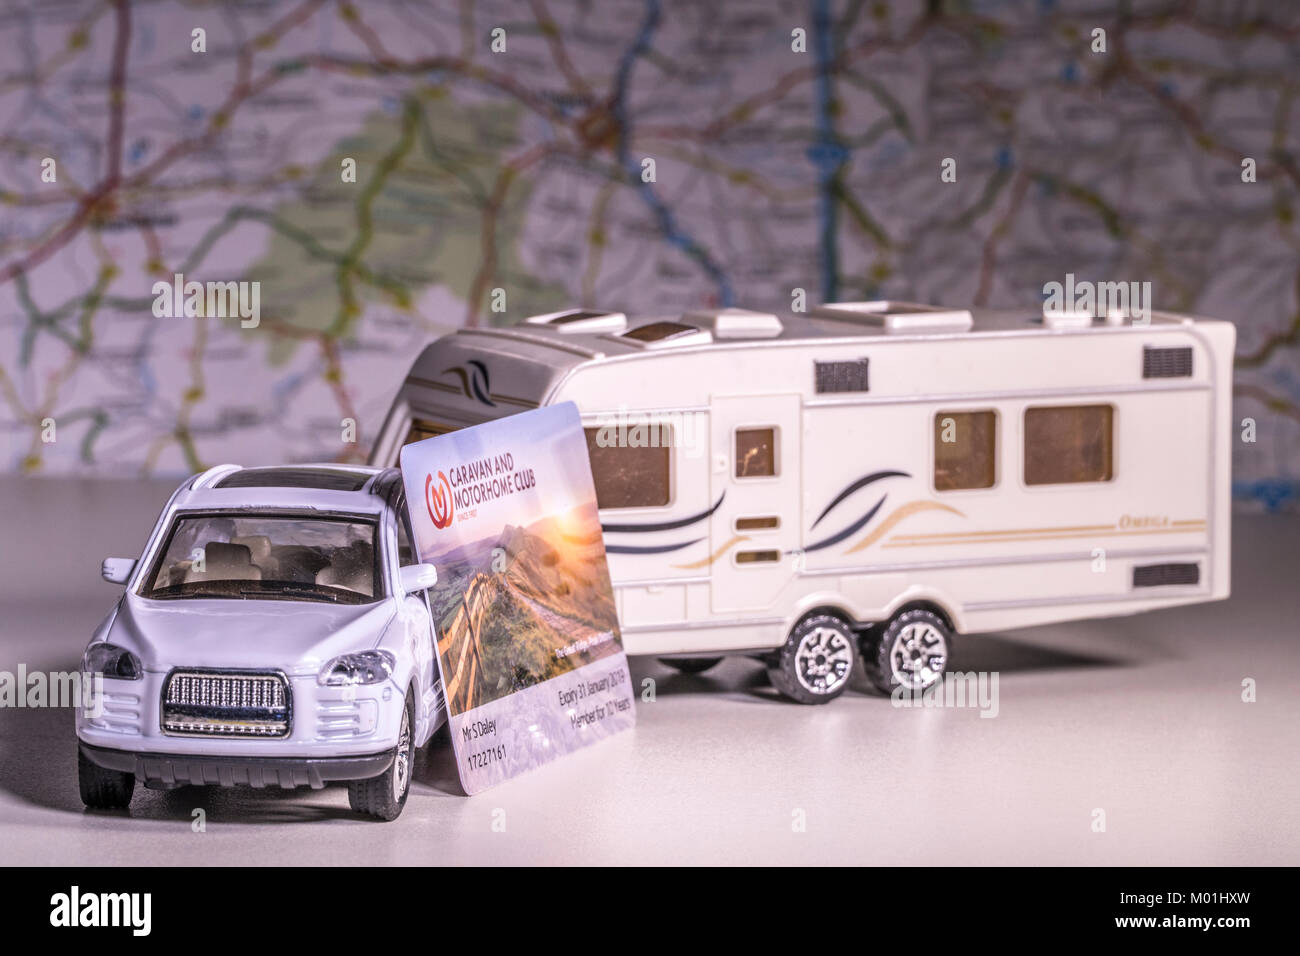 Caravane et voiture avec modèle UK "caravane et camping Club' et la carte  de membre carte de flou artistique / atlas. Concept de touring en utilisant  un réseau de camping Photo Stock -